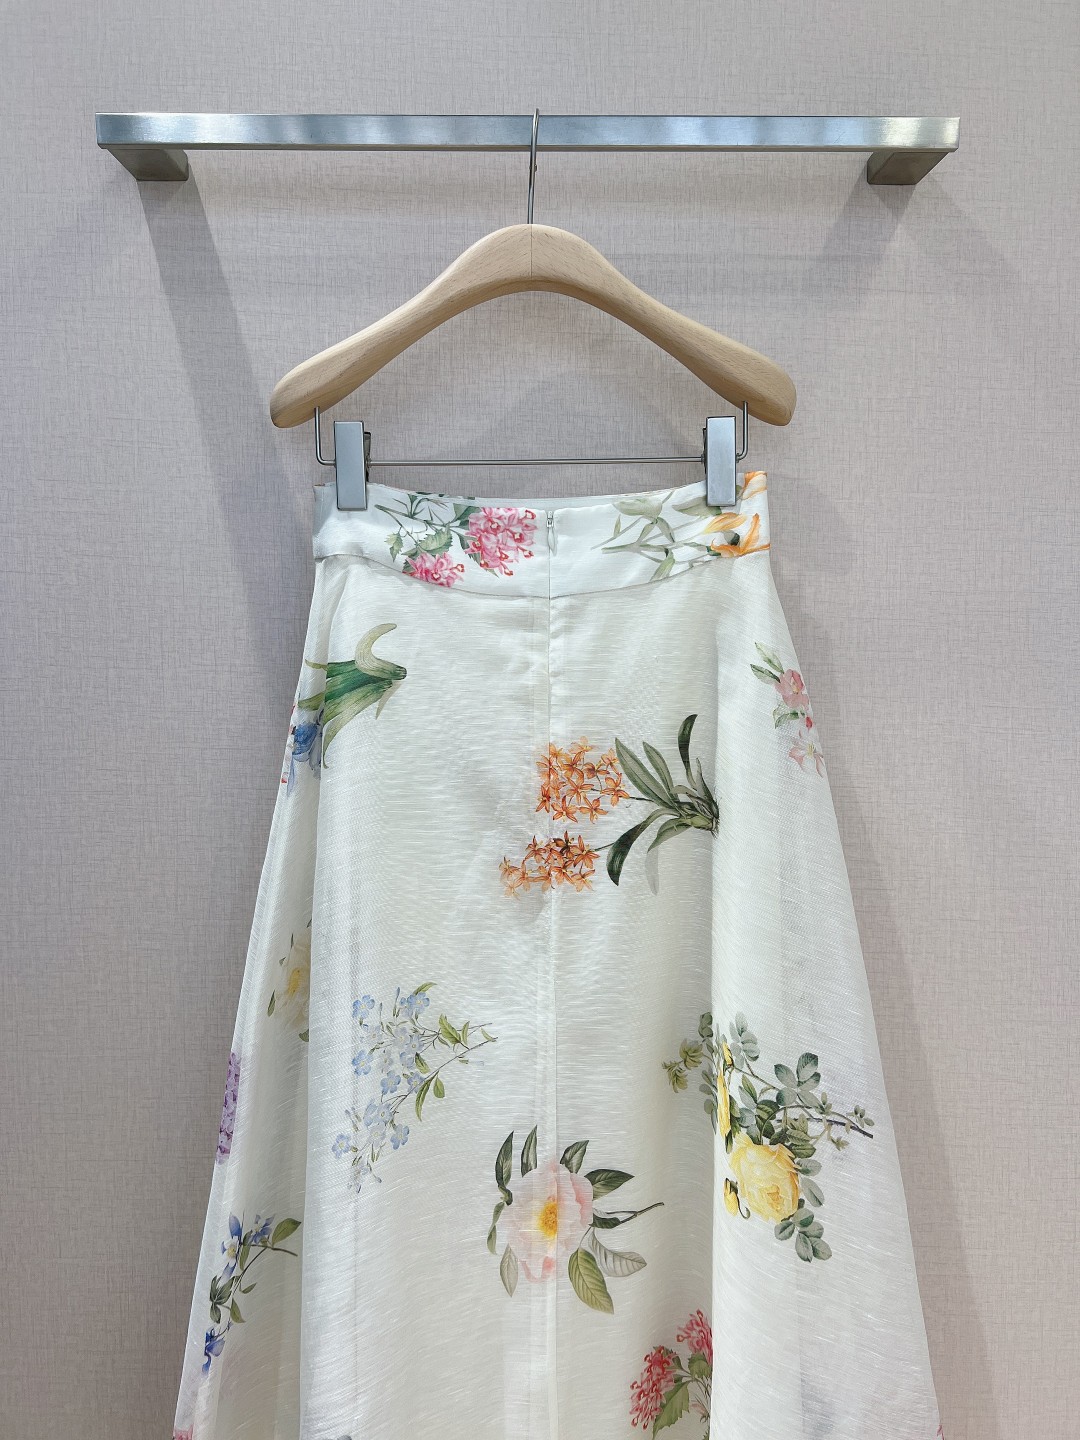 澳洲设计师品牌Zimmerman*n新品丝麻料质地材质真丝网纱半身裙裙身上饰有淡淡的高雅花卉印花棉布内里